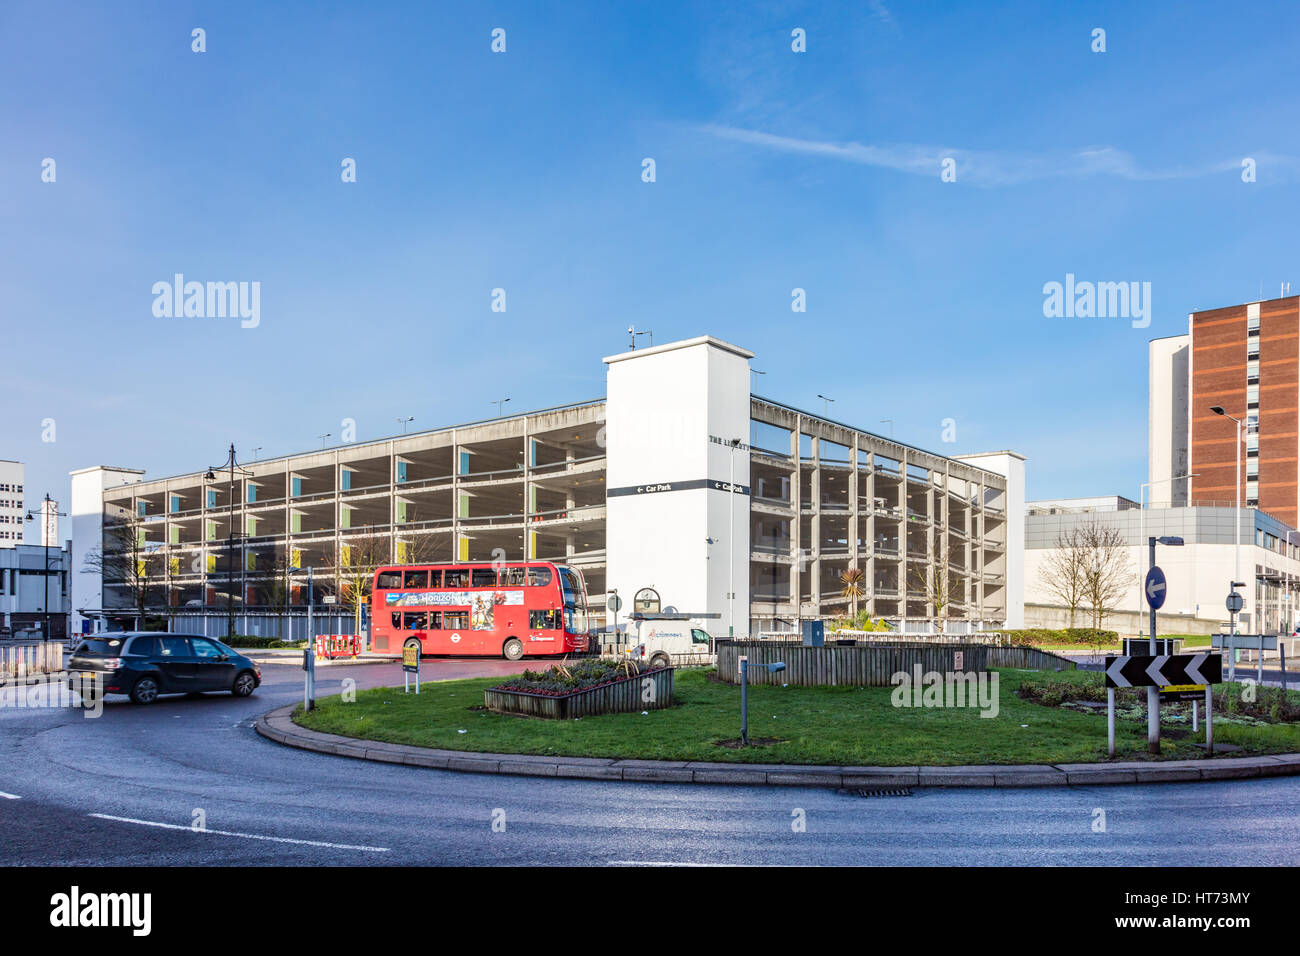 Gran estacionamiento de varios pisos para la Libertad shopping center, en el A1251, carretera de circunvalación de Romford, en una concurrida rotonda, London, UK Foto de stock